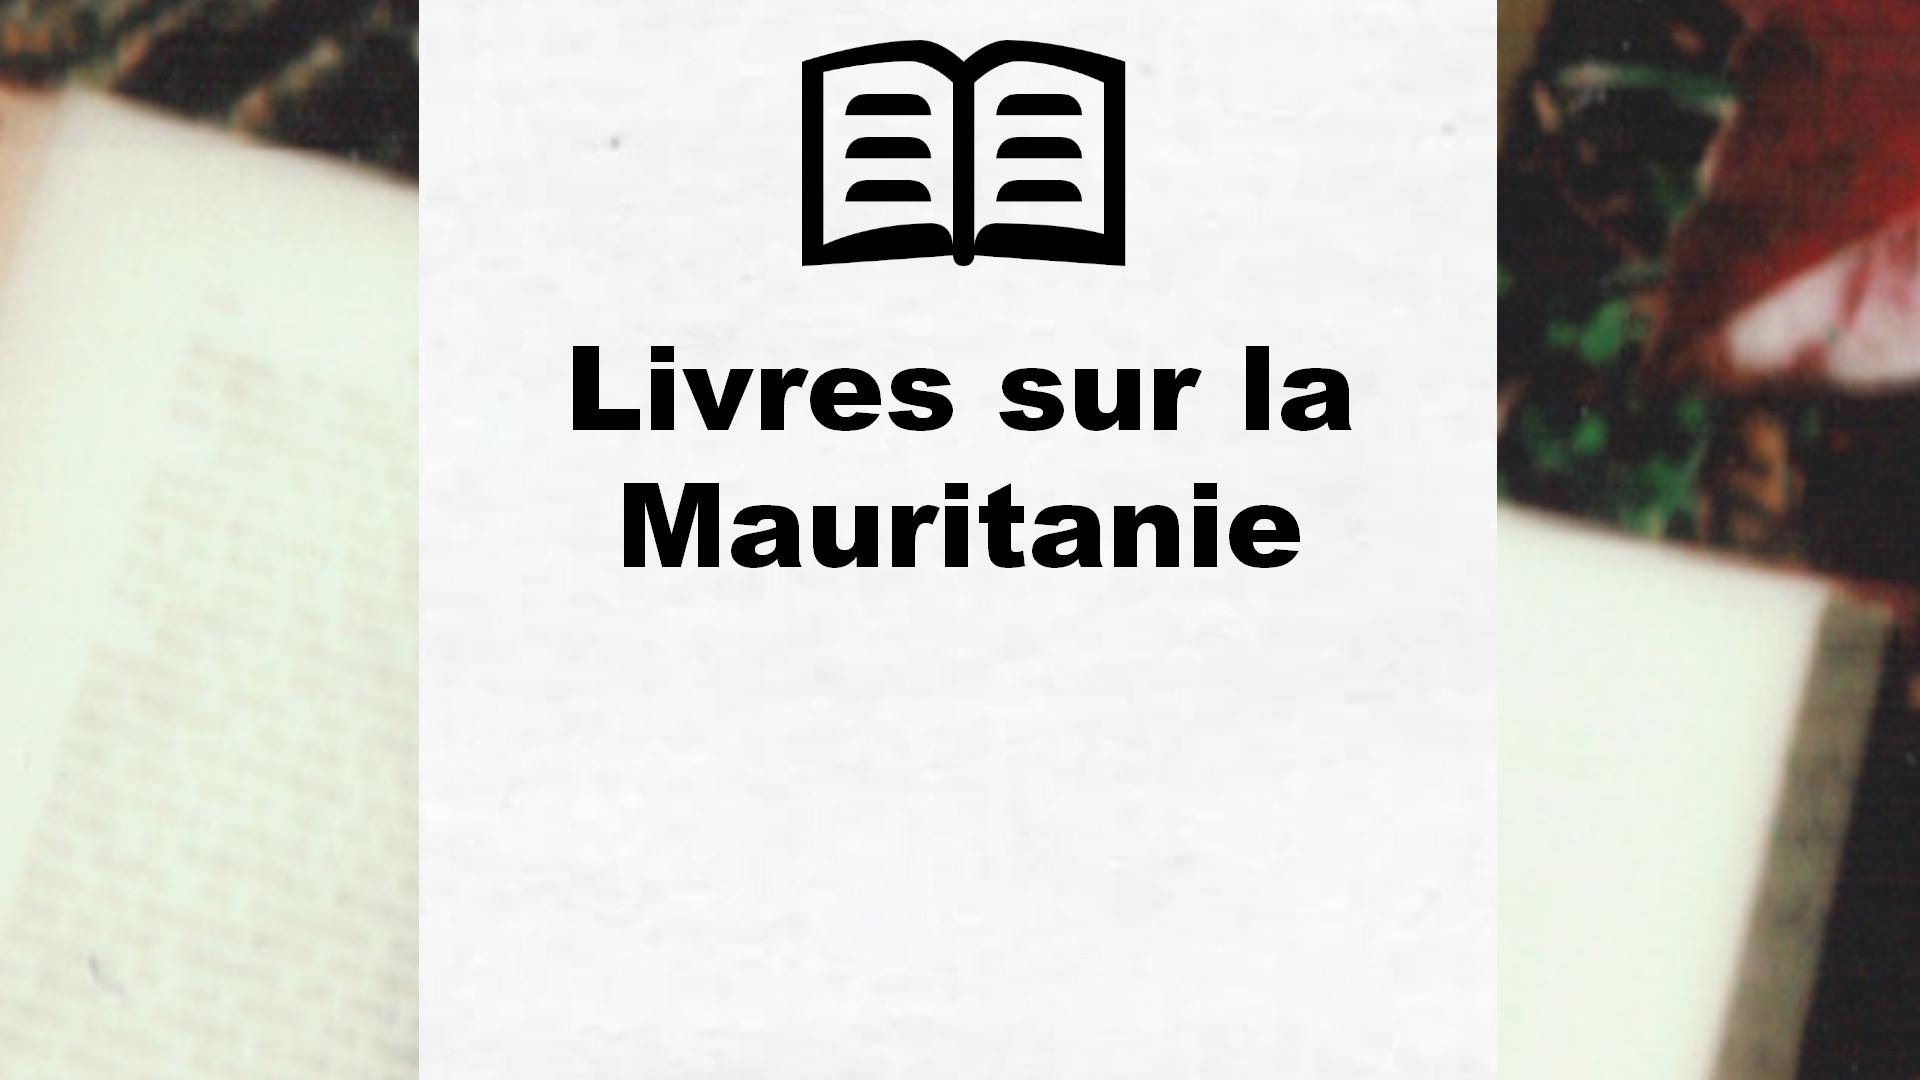 Livres sur la Mauritanie